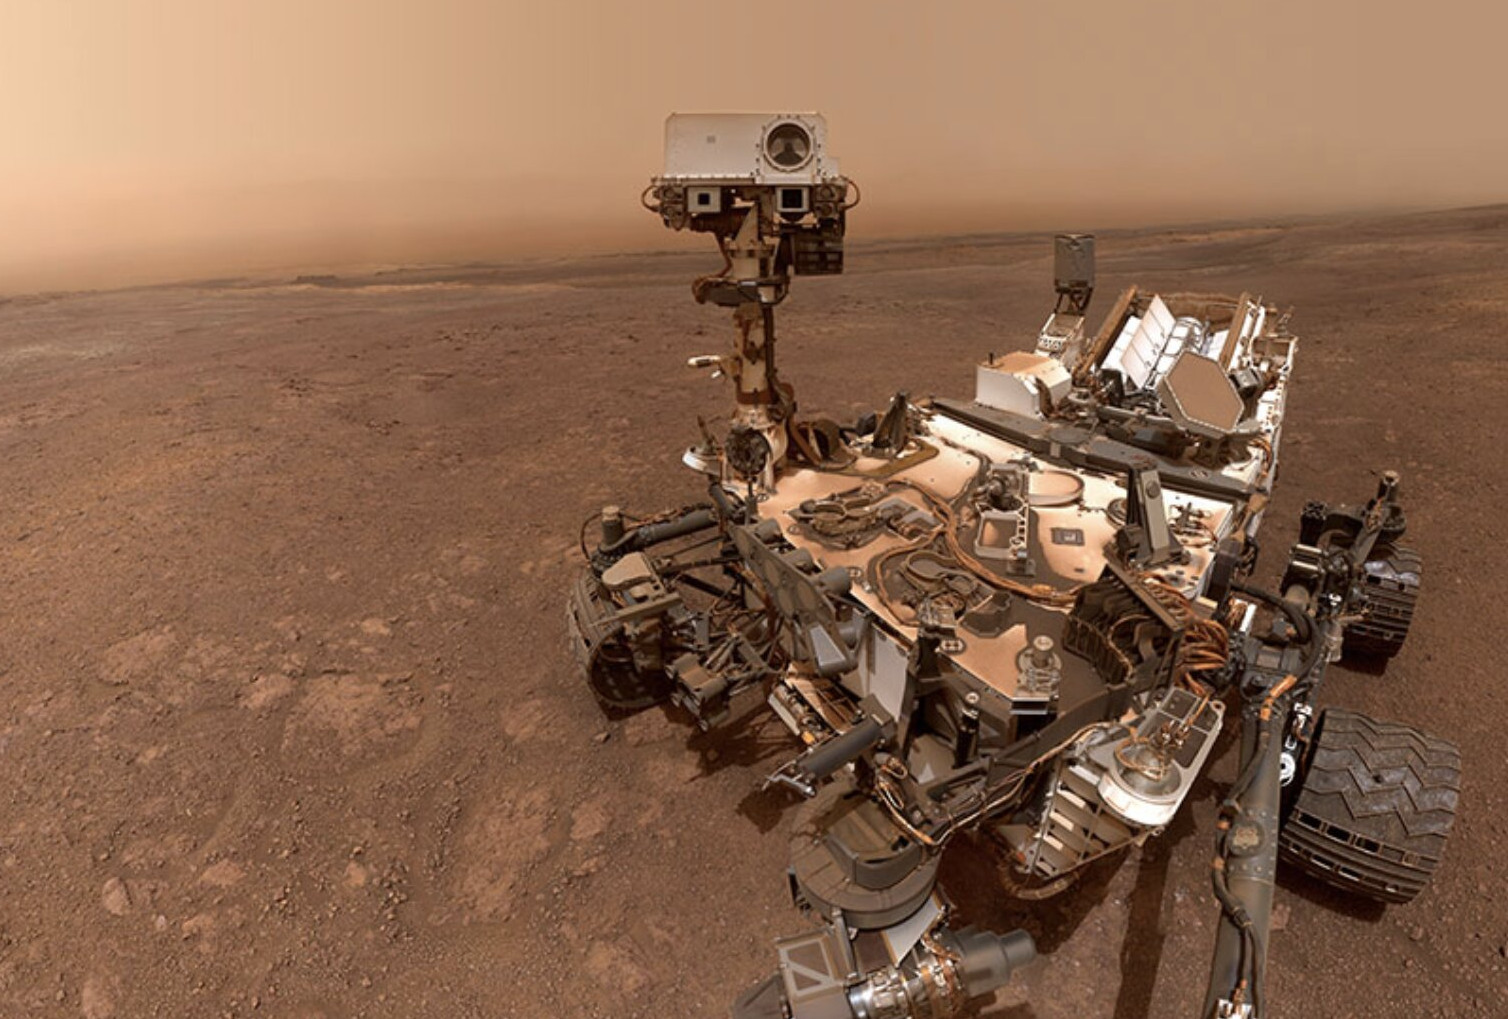 Μυστήριο στον Άρη κάνει επιστήμονες να σκέφτονται το ενδεχόμενο ζωής στην πλανήτη